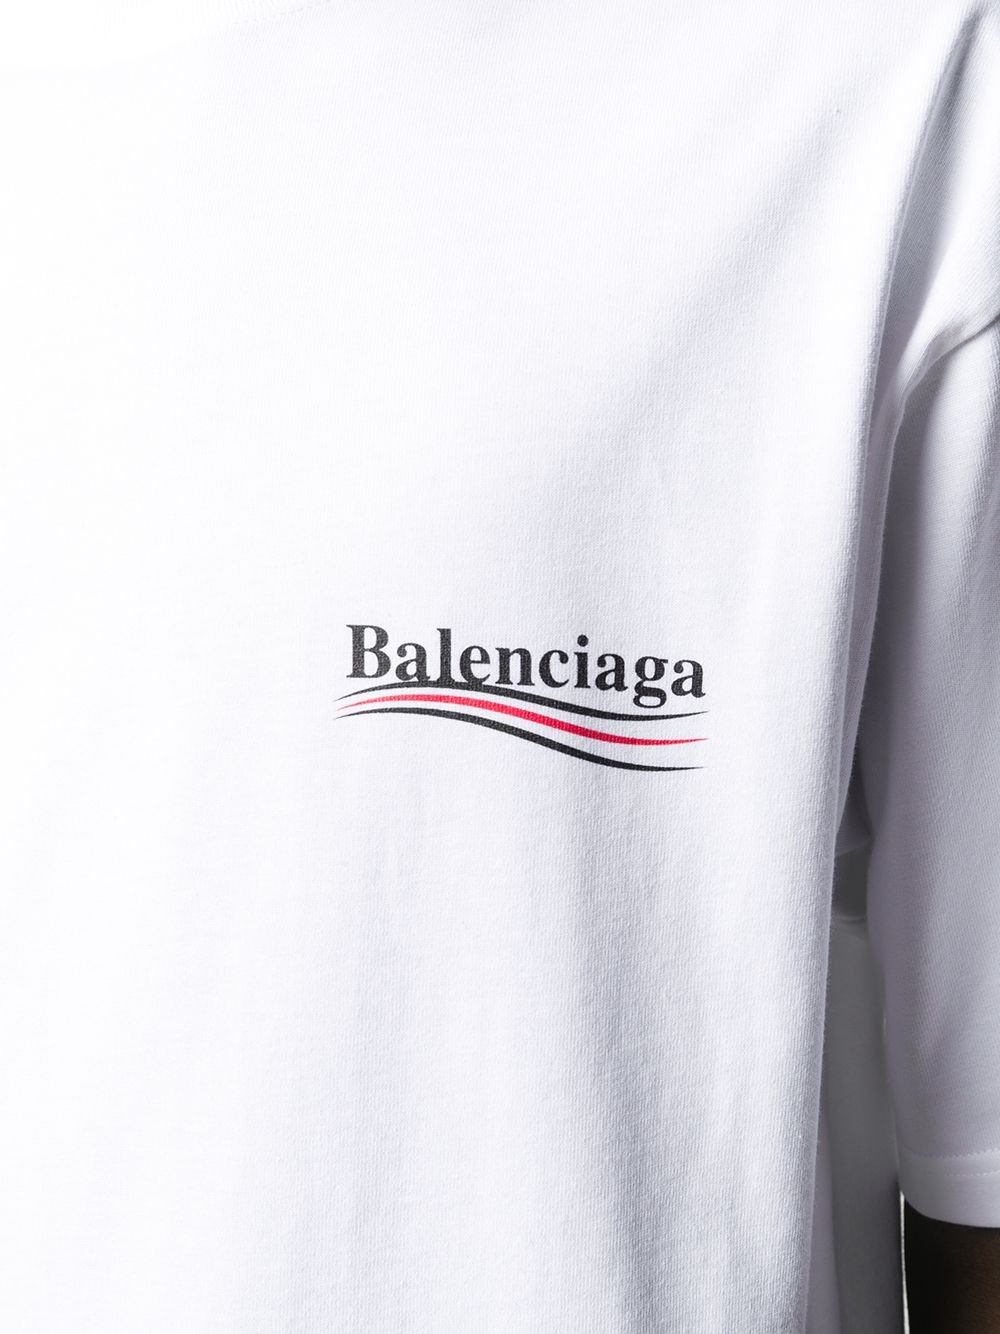 בלנסיאגה טי שירט צבע לבן embroidered logo T-shirt